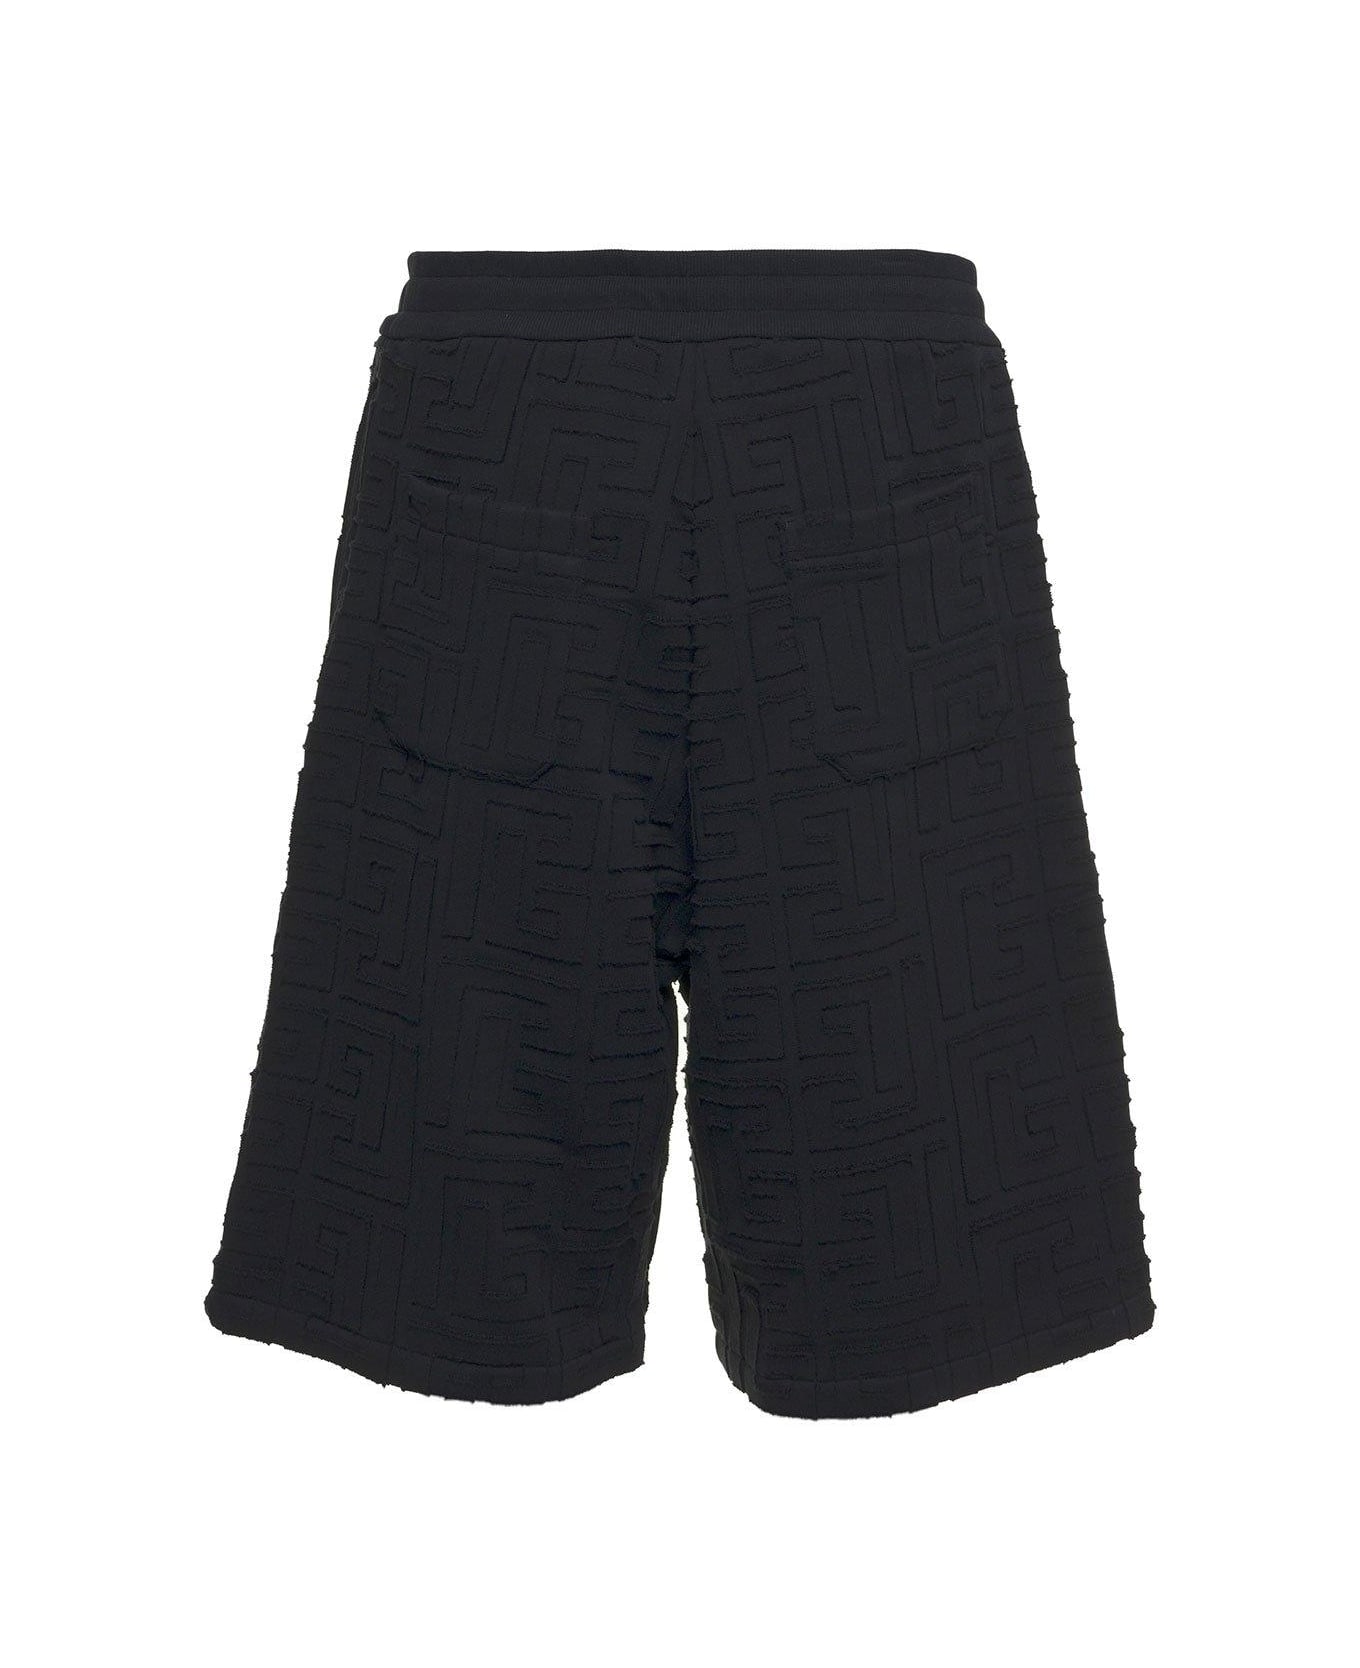 Balmain Drawstring Shorts - Black ショートパンツ